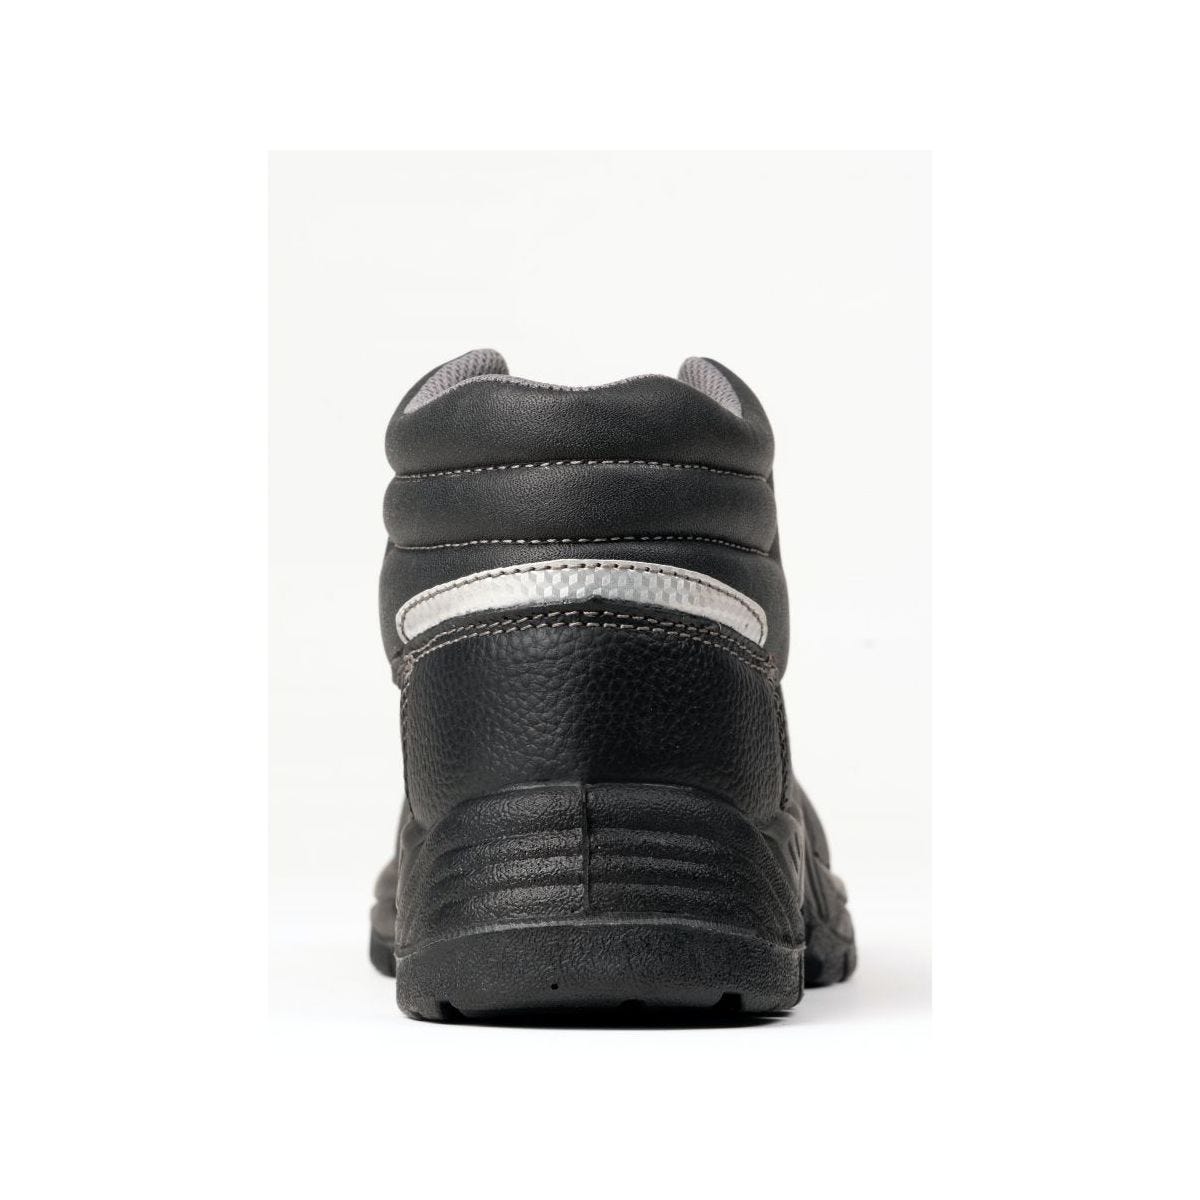 Chaussures de sécurité hautes AGATE II S3 Noir - Coverguard - Taille 40 1